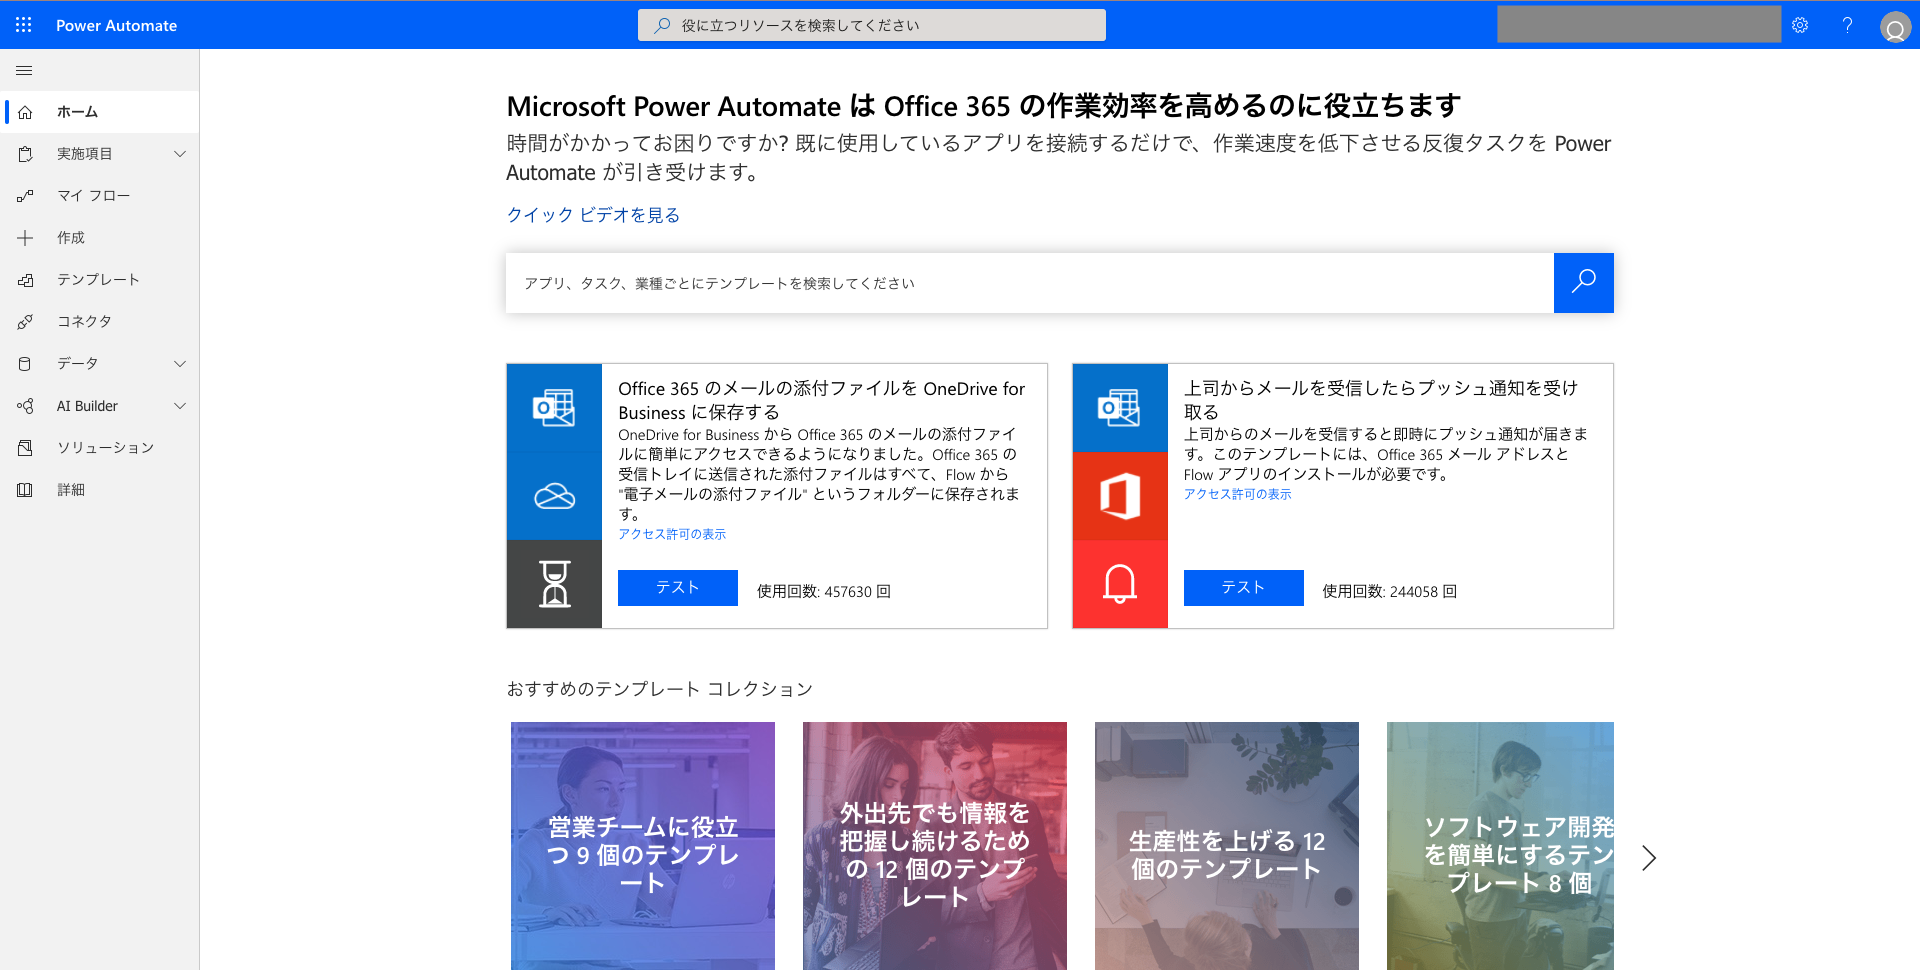 Microsoft 365 にログインし、Power Automate アプリを選択する